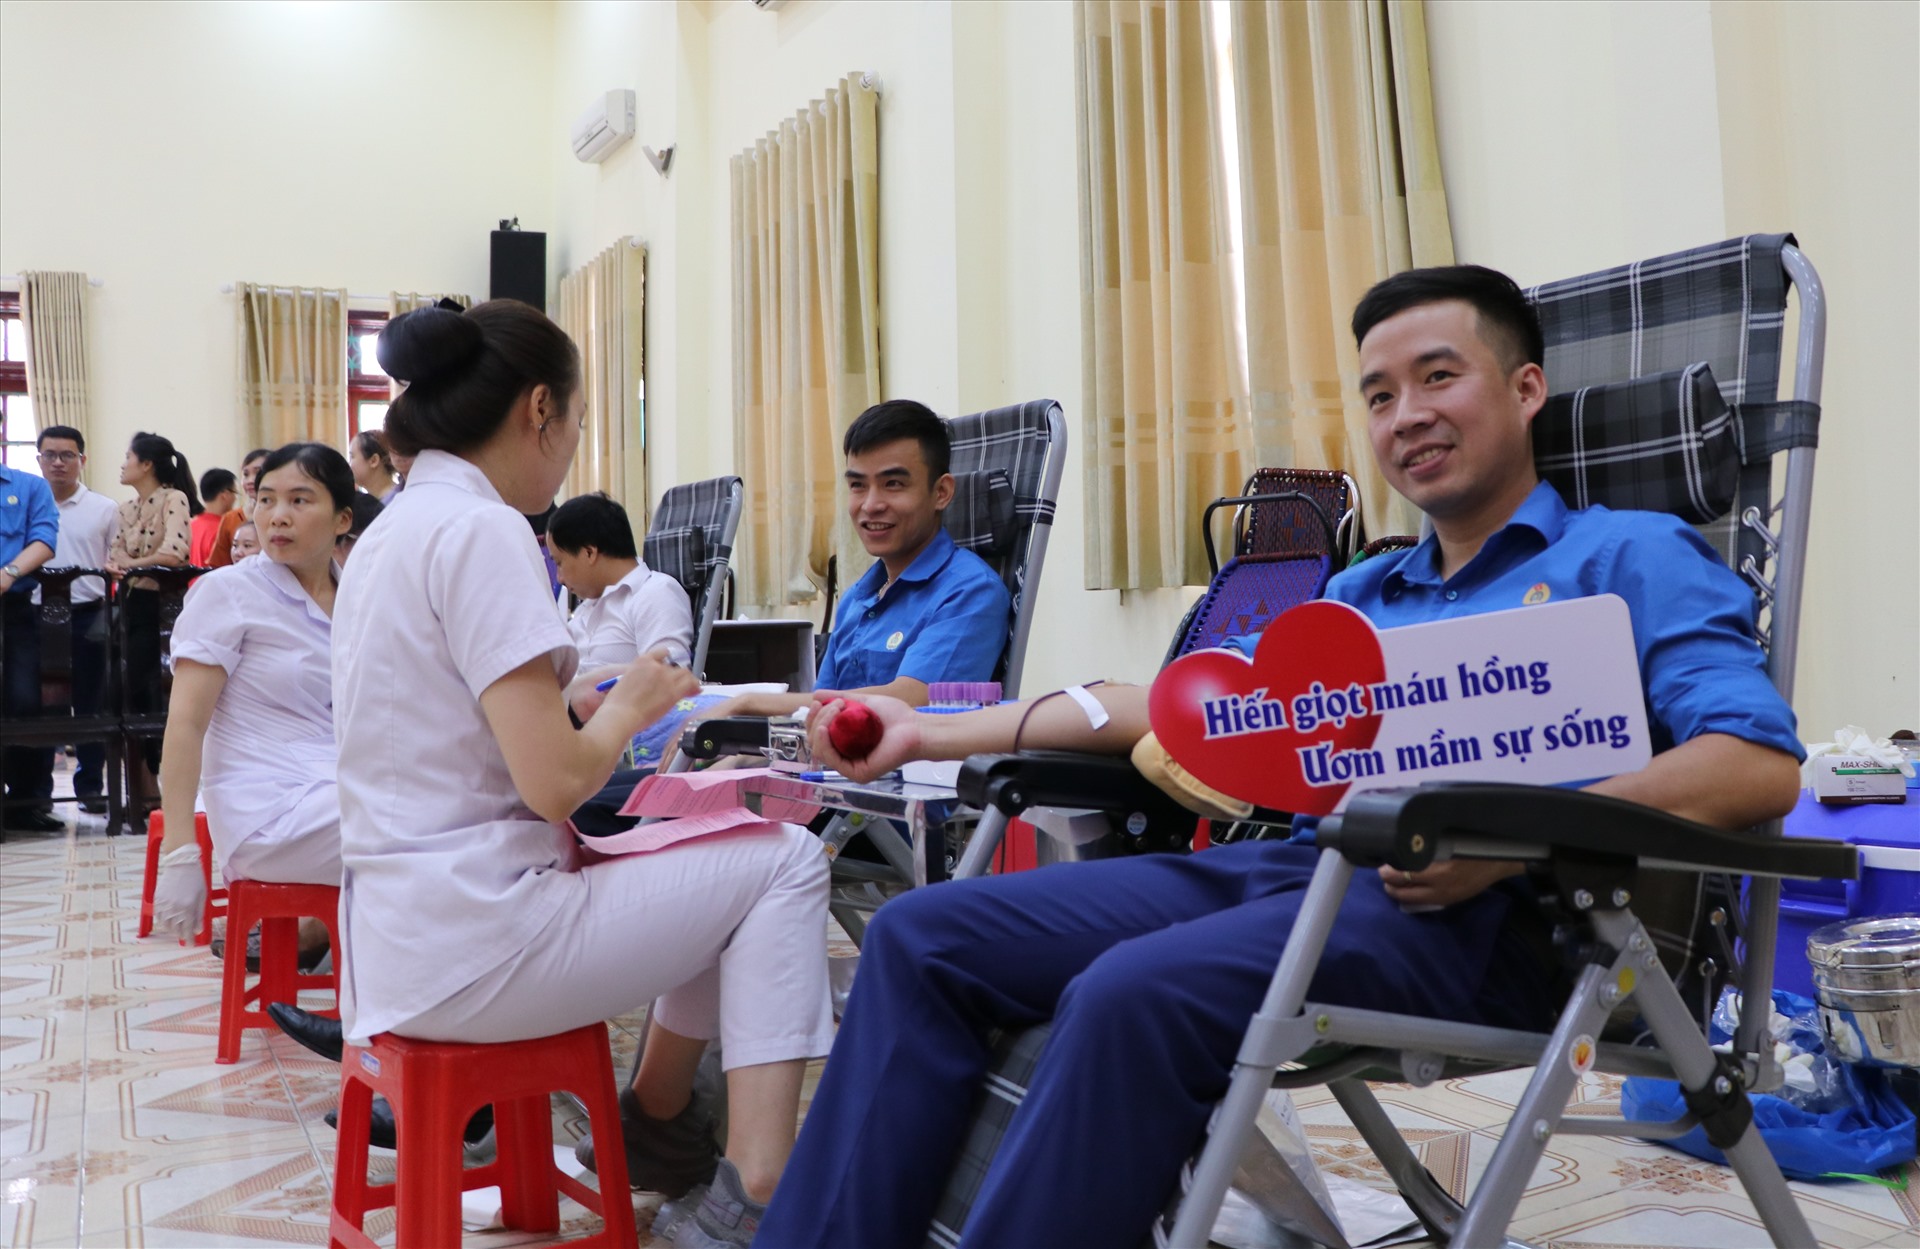 Đoàn viên công đoàn tỉnh Yên Bái tham gia hiến máu tình nguyện. Ảnh: Xuân Hiền